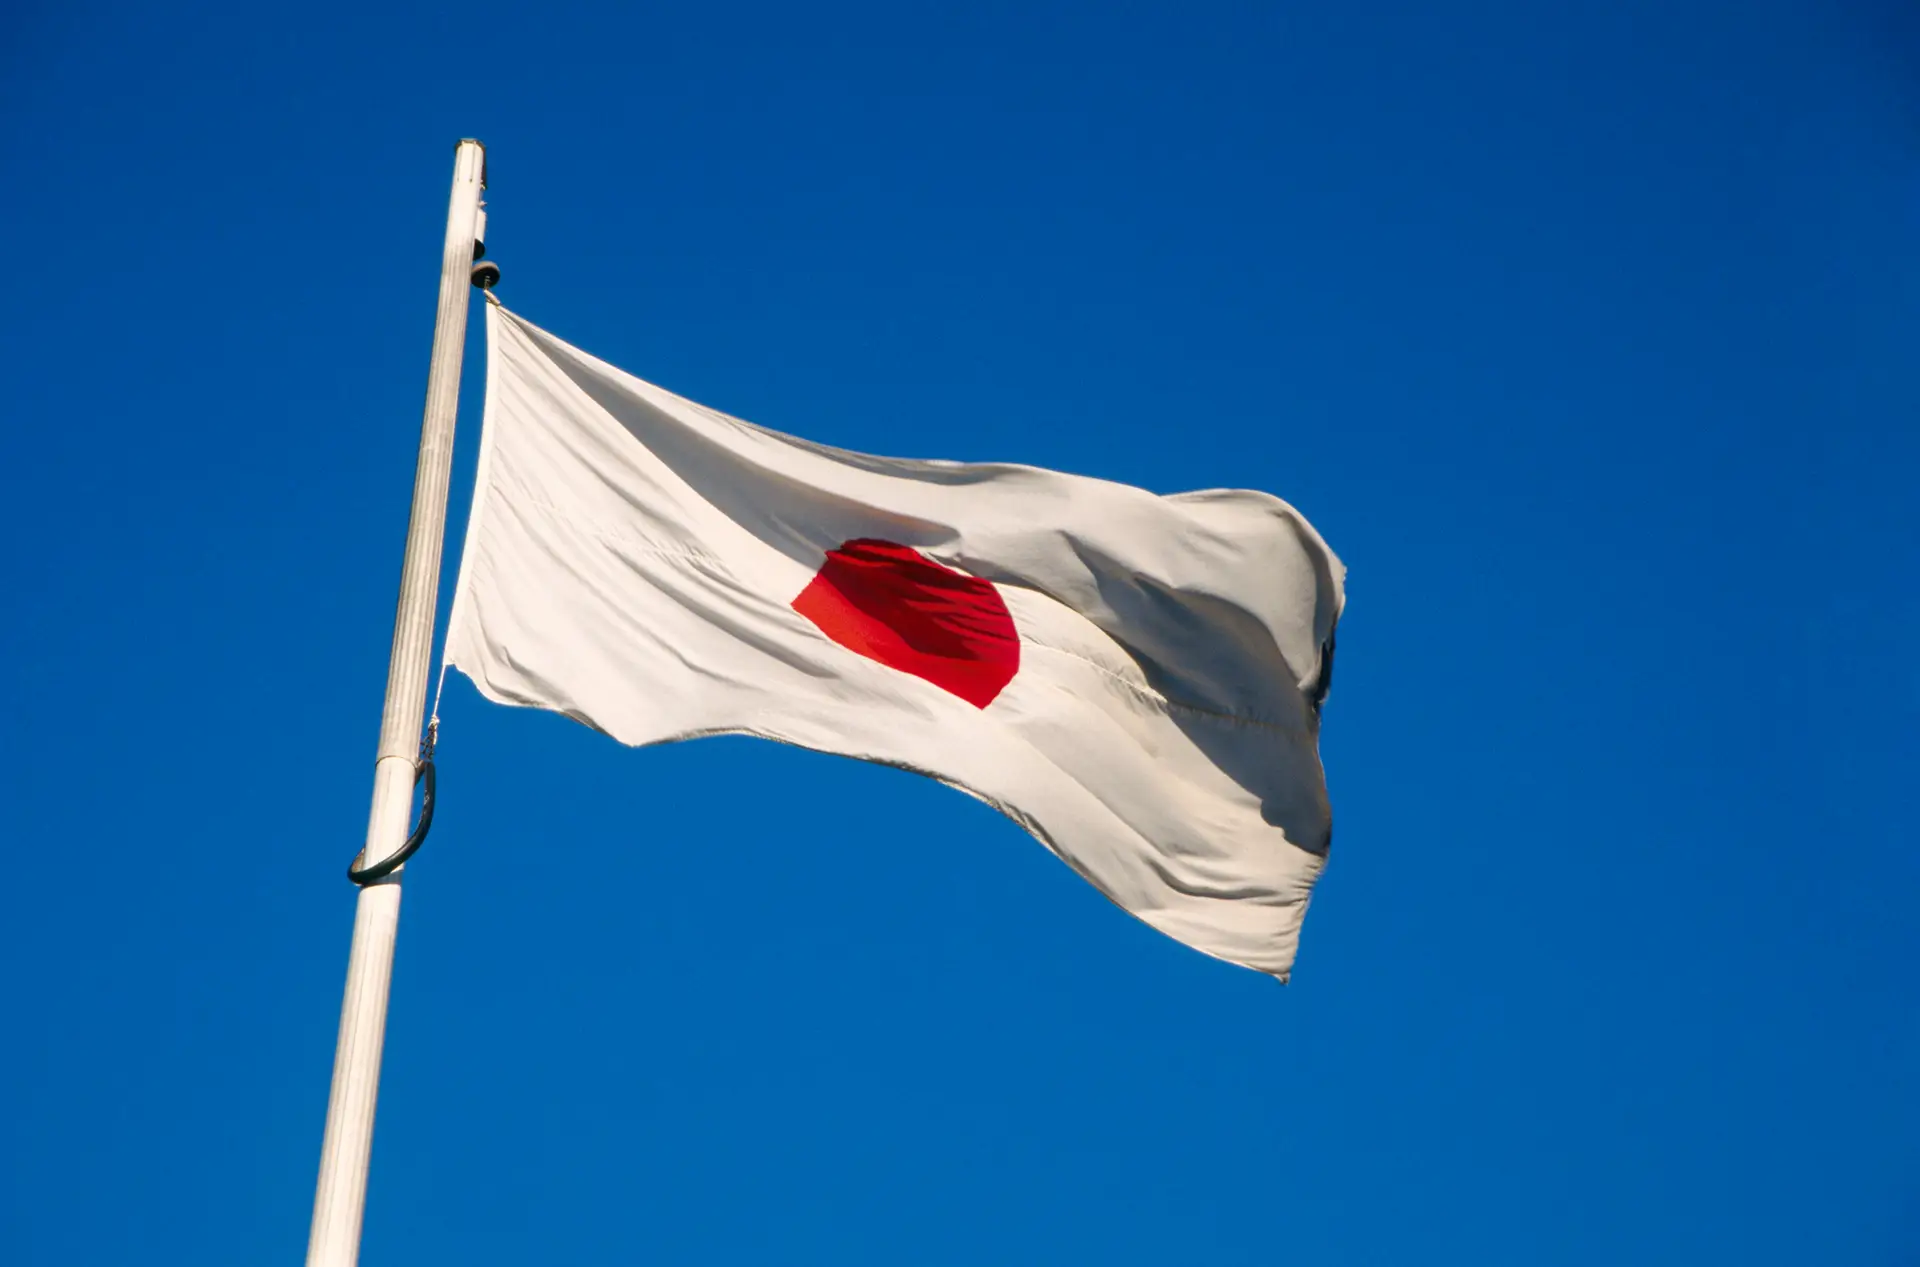 Bandeira do Japão.